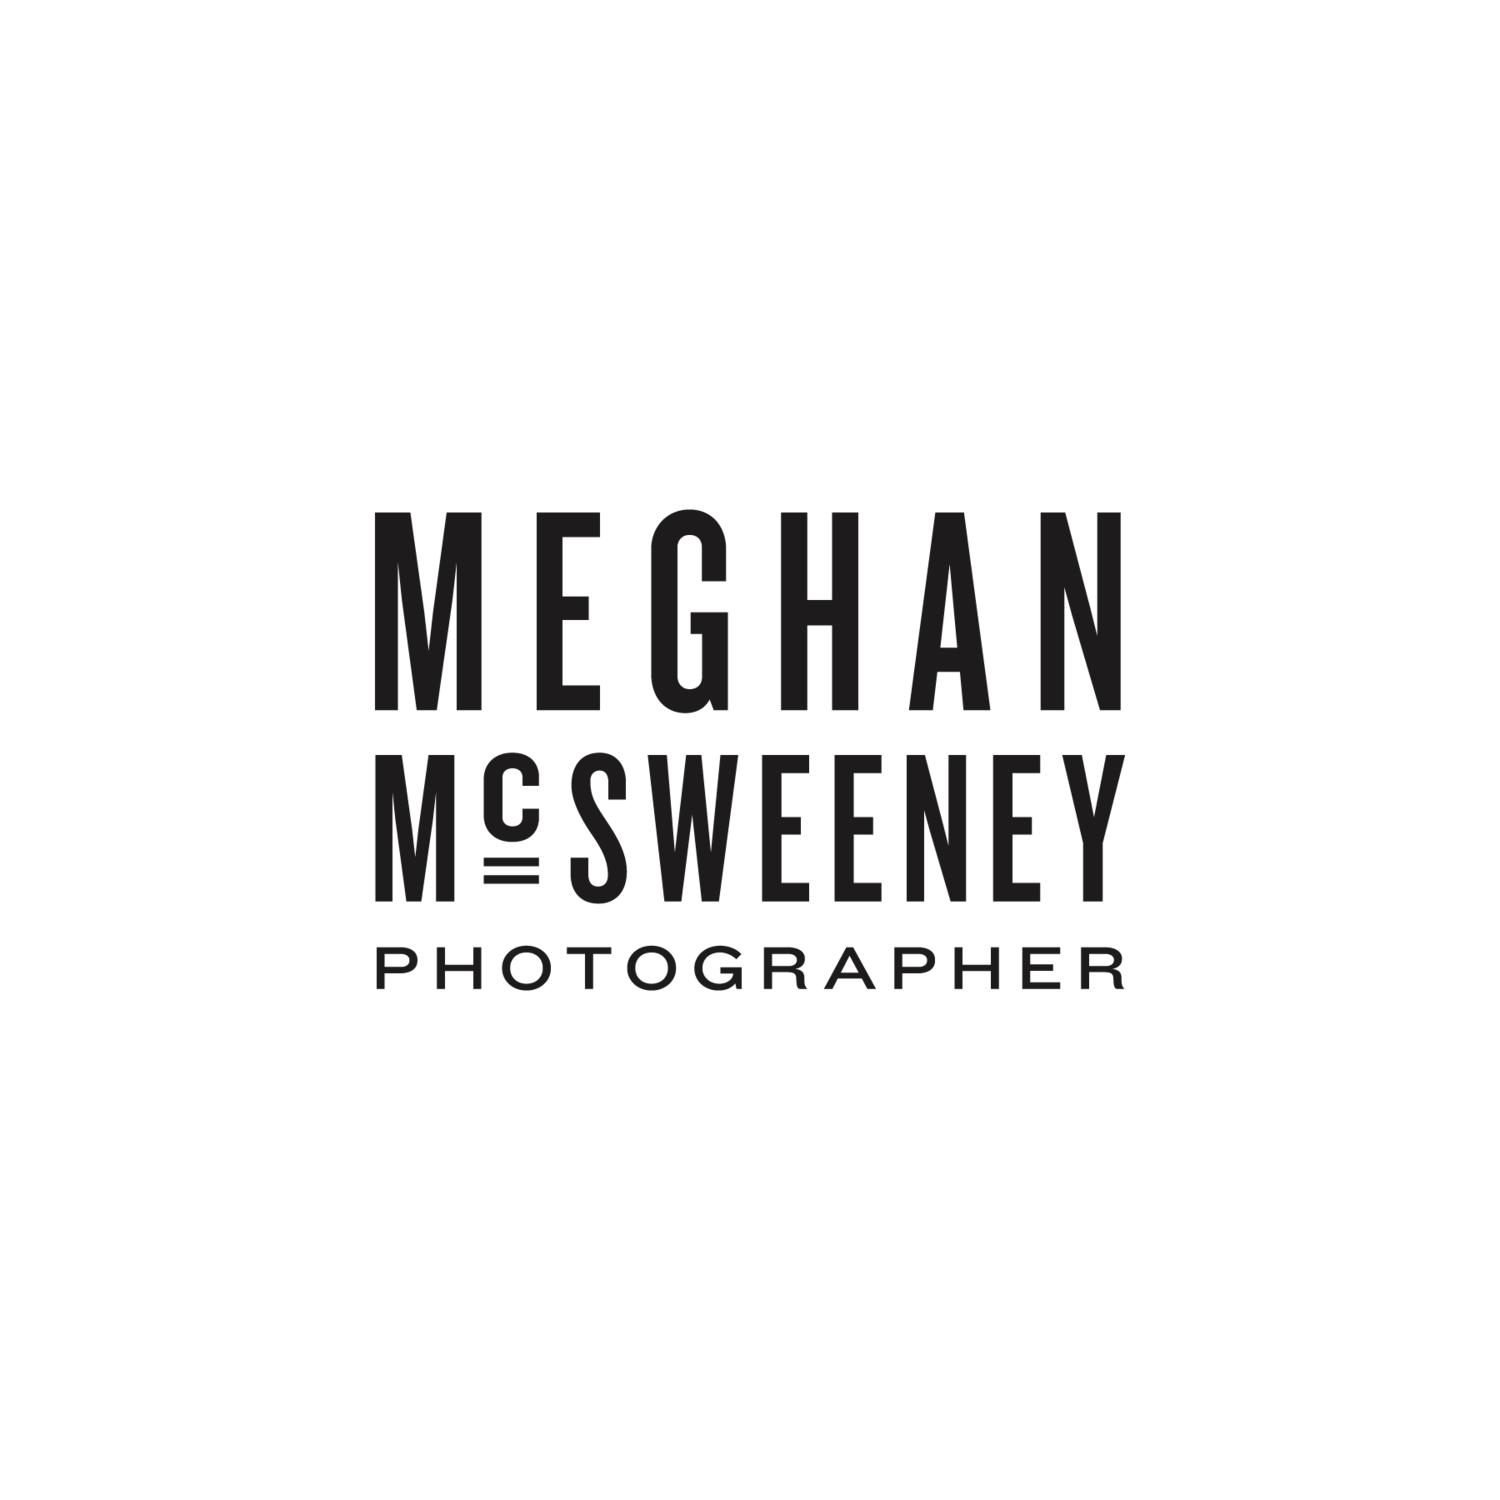 Meghan McSweeney Photography